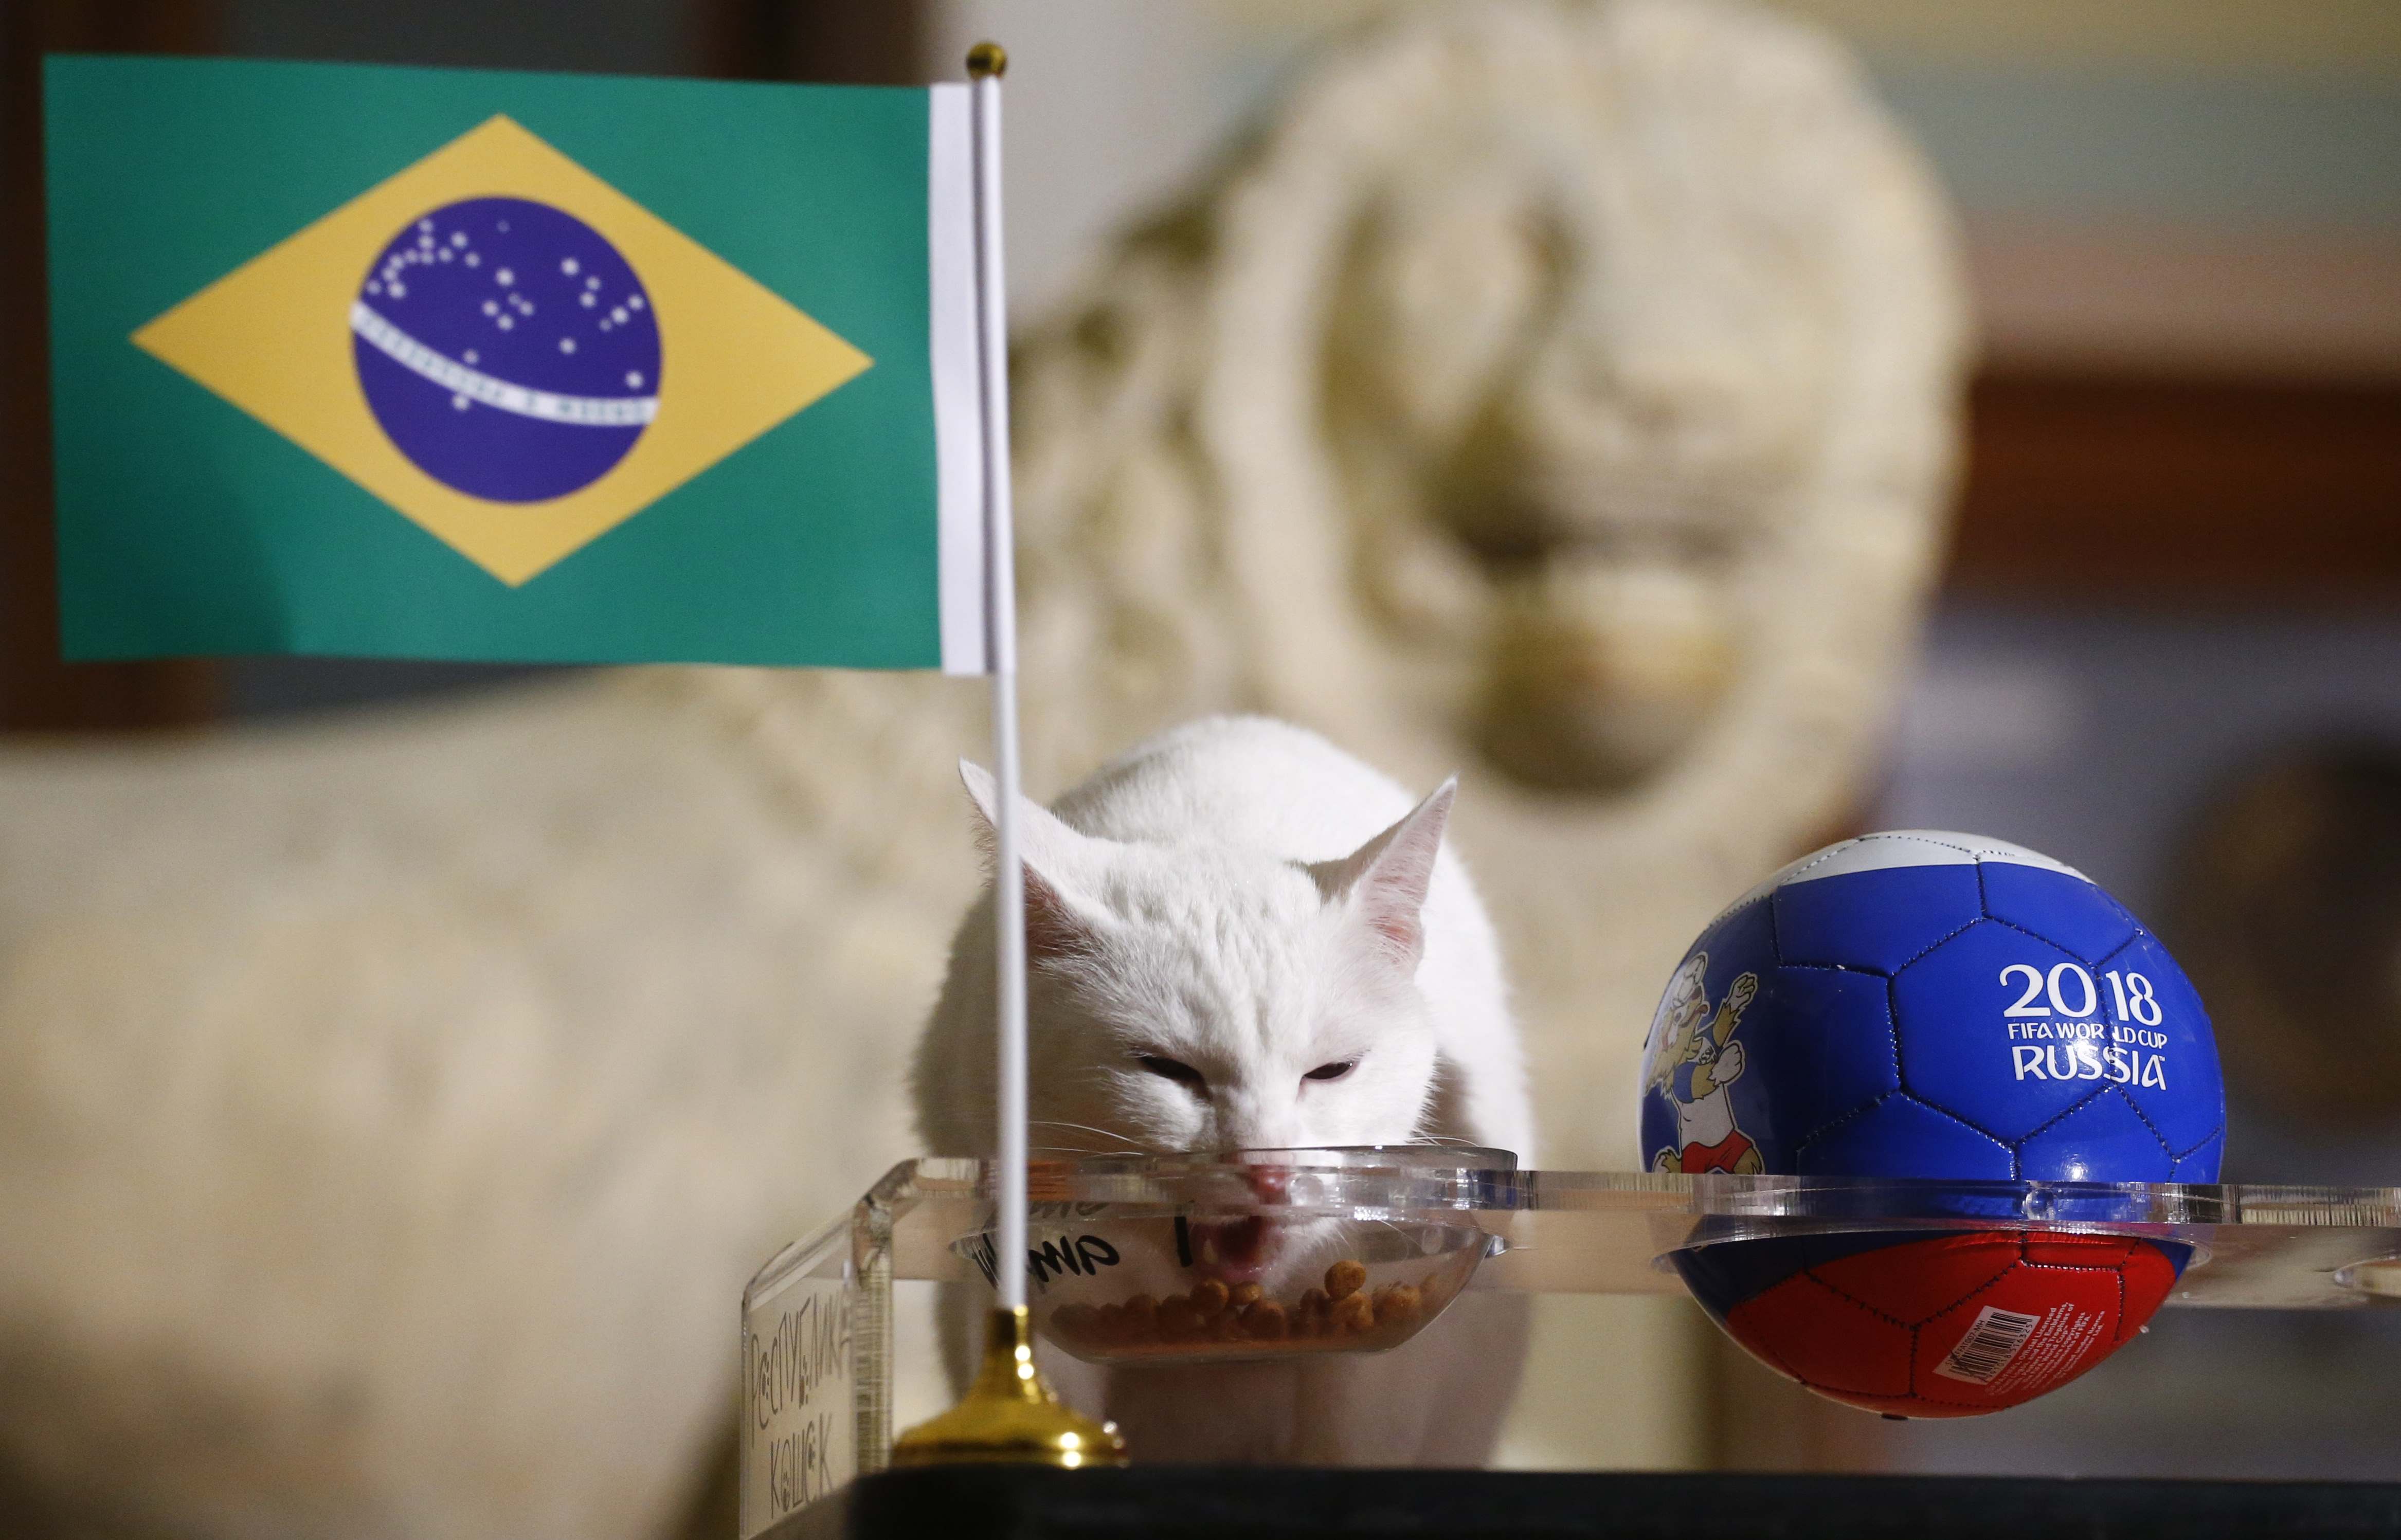 القط "أخيل" يتنبأ بنتيجة مباراة البرازيل وكوستاريكا